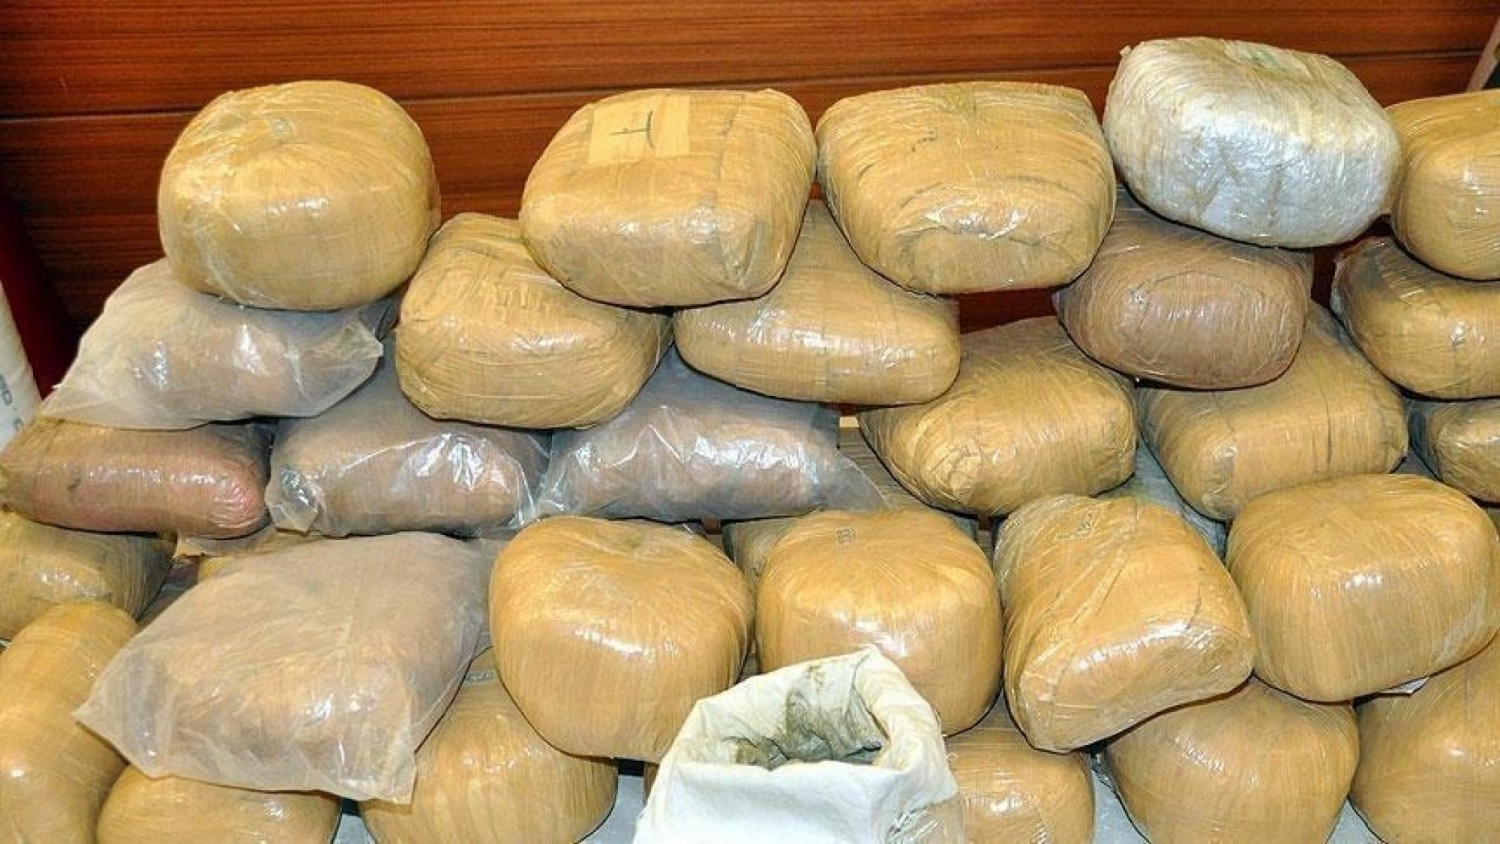 Sénégal : Saisie record de 2 tonnes de cocaïne pure au large de Dakar